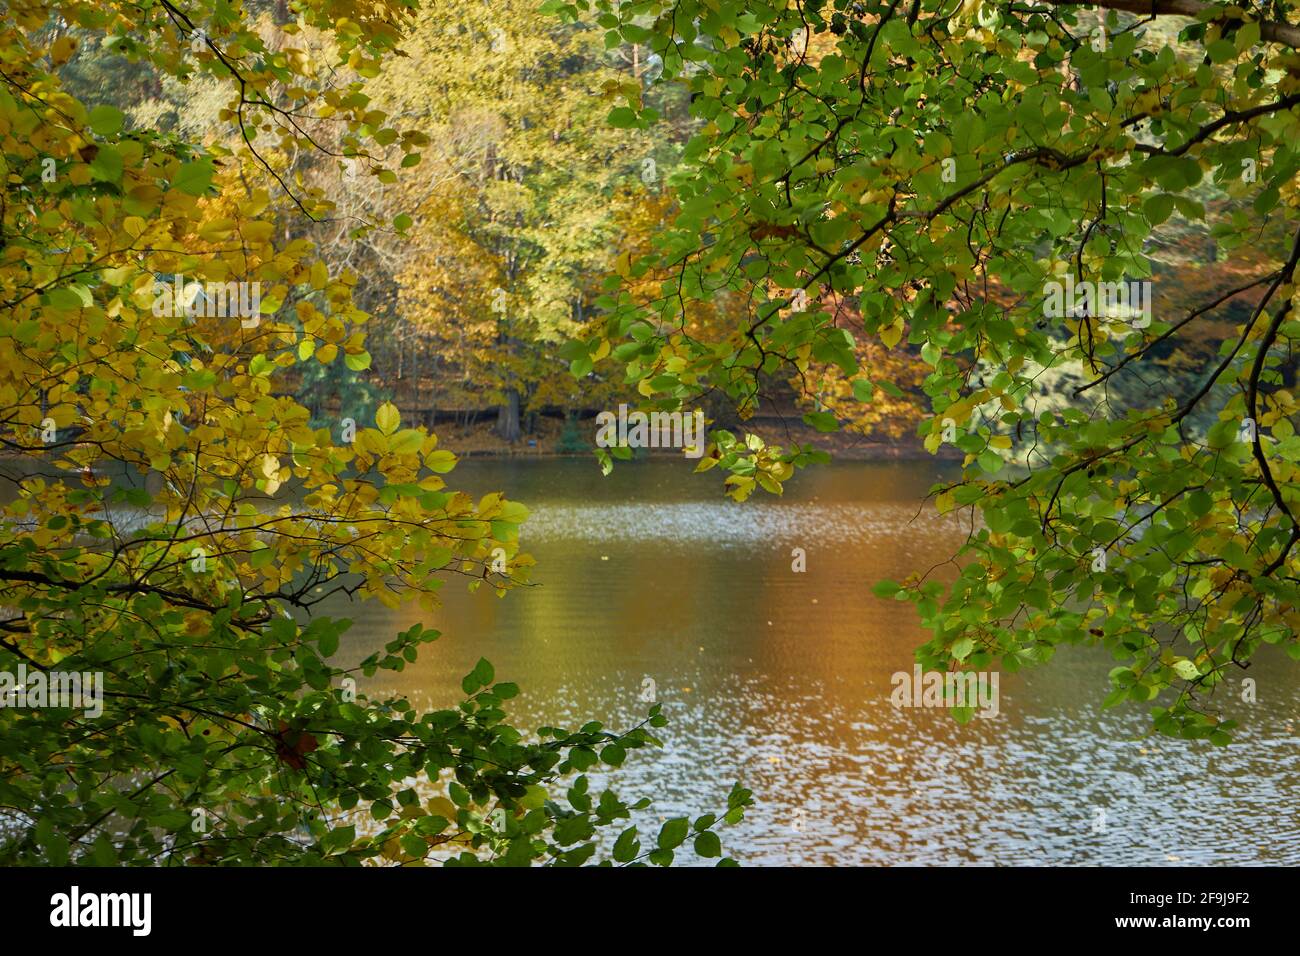 Krumme Lanke, Bäume mit Herbstlaub, Steglitz-Zehlendorf, Berlin, Deutschland Foto Stock